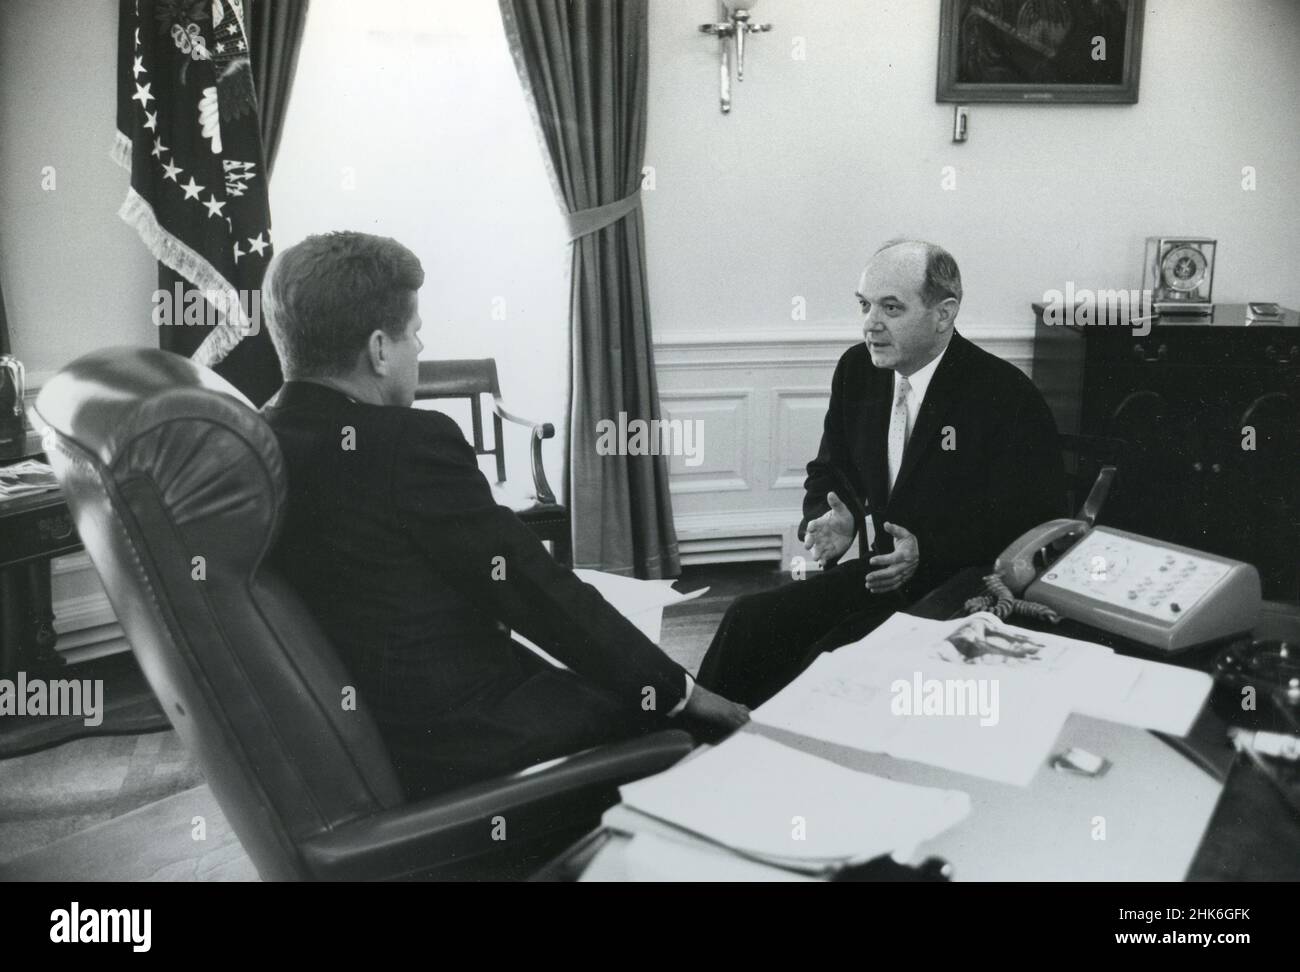 1961, Maison Blanche - le président John F Kennedy s'entretient avec le secrétaire d'État Dean Rusk dans le Bureau ovale. Banque D'Images